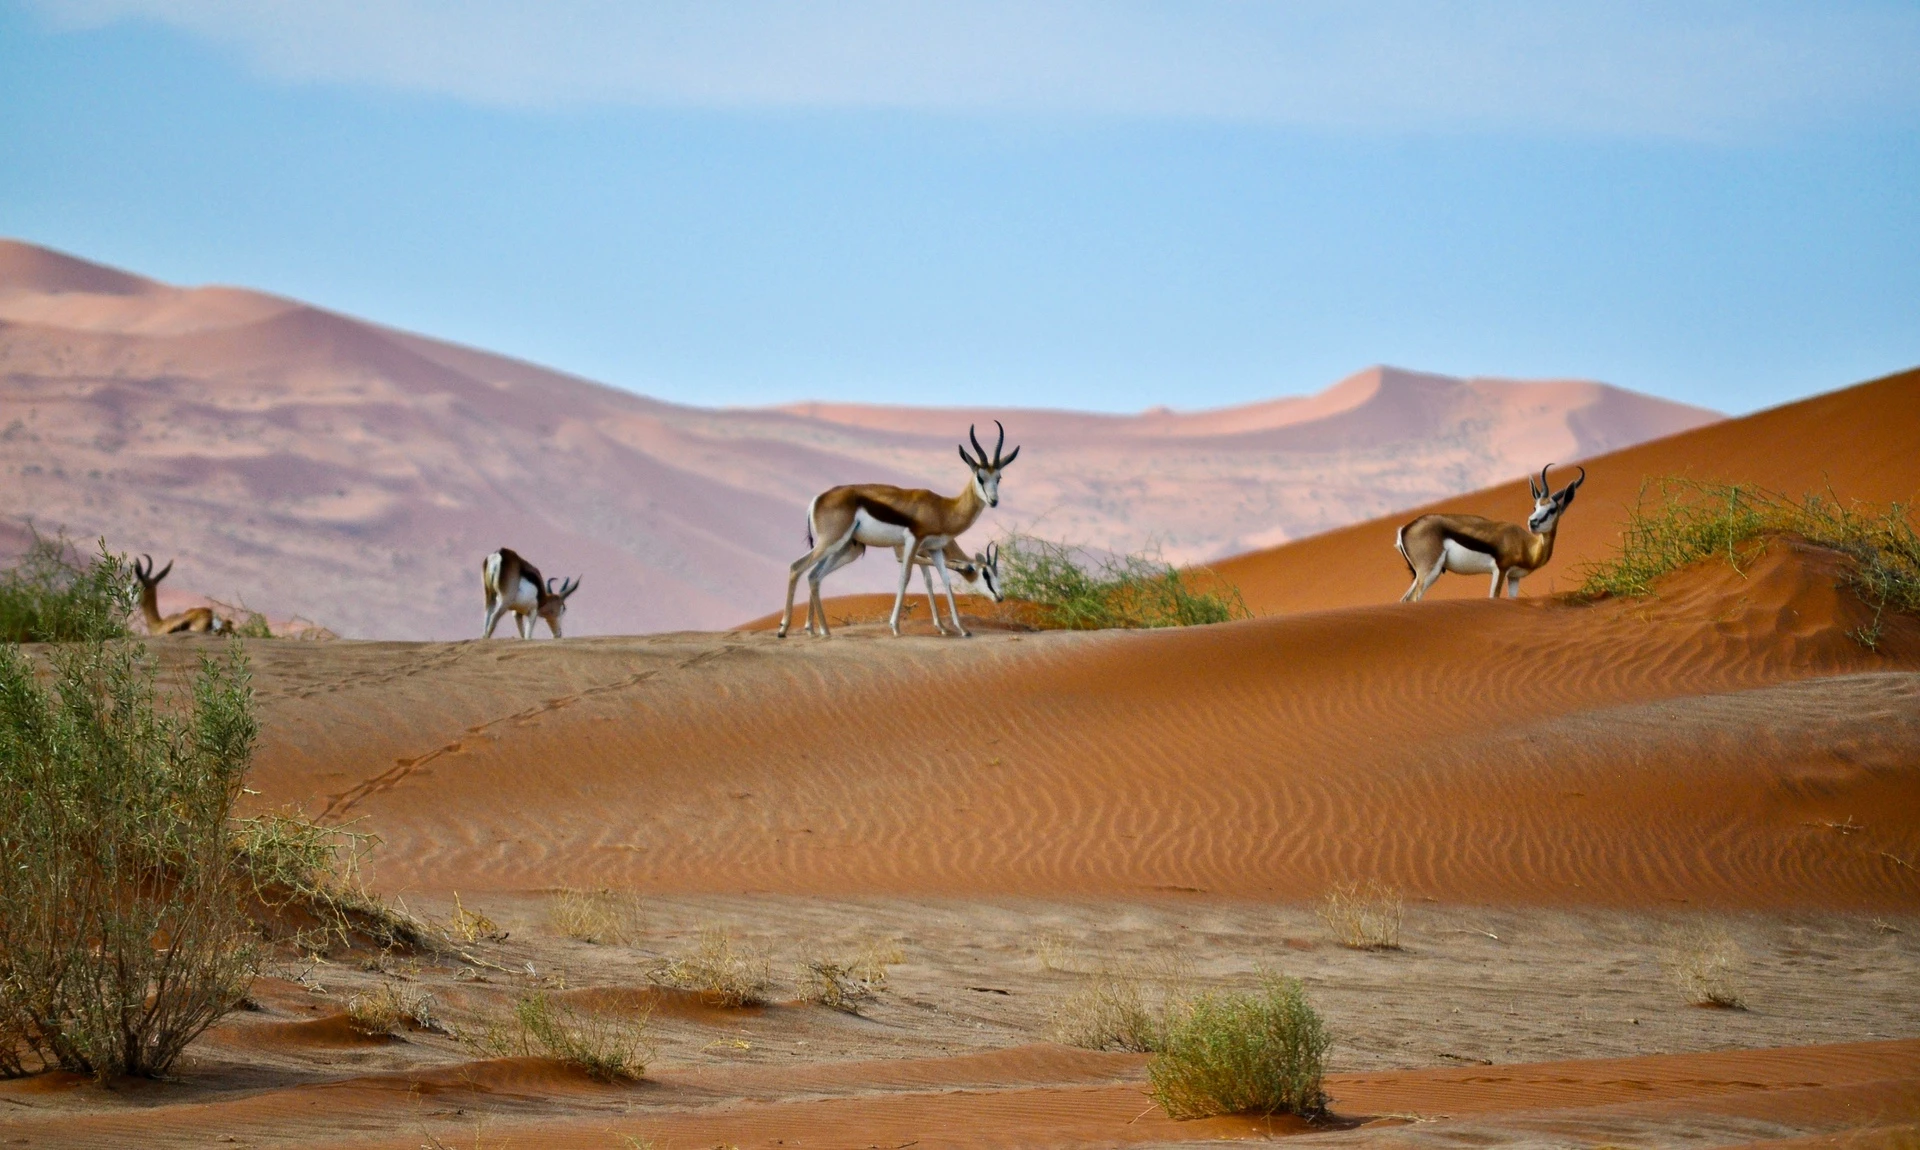 Bạn sẽ phải băng qua những sa mạc lâu đời, các cồn cát gần Đại Tây Dương và nhiều vịnh đẹp nhất ở châu Phi. Trên chặng đường phiêu lưu của mỗi lái xe còn gặp nhiều loài động vật hoang dã, được khám phá một thiên nhiên hoàn toàn mới mẻ.